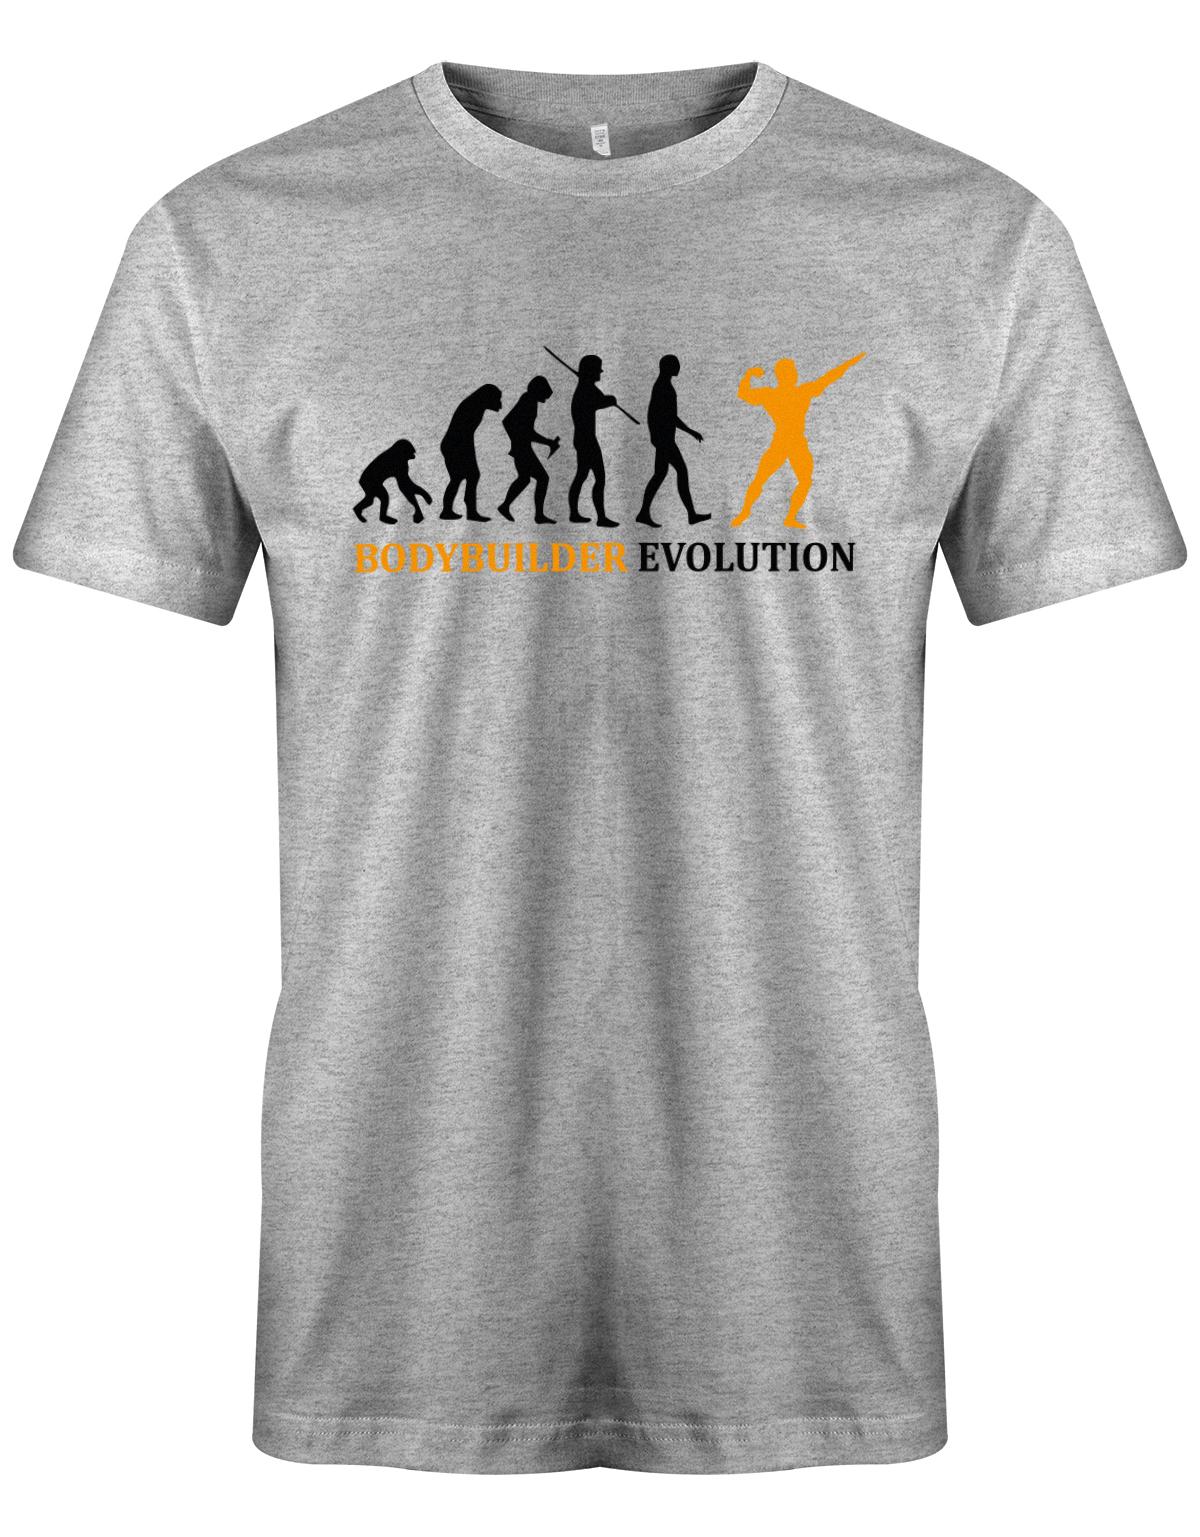 Bodybuilder-Evolution-Herren-Shirt-Grau